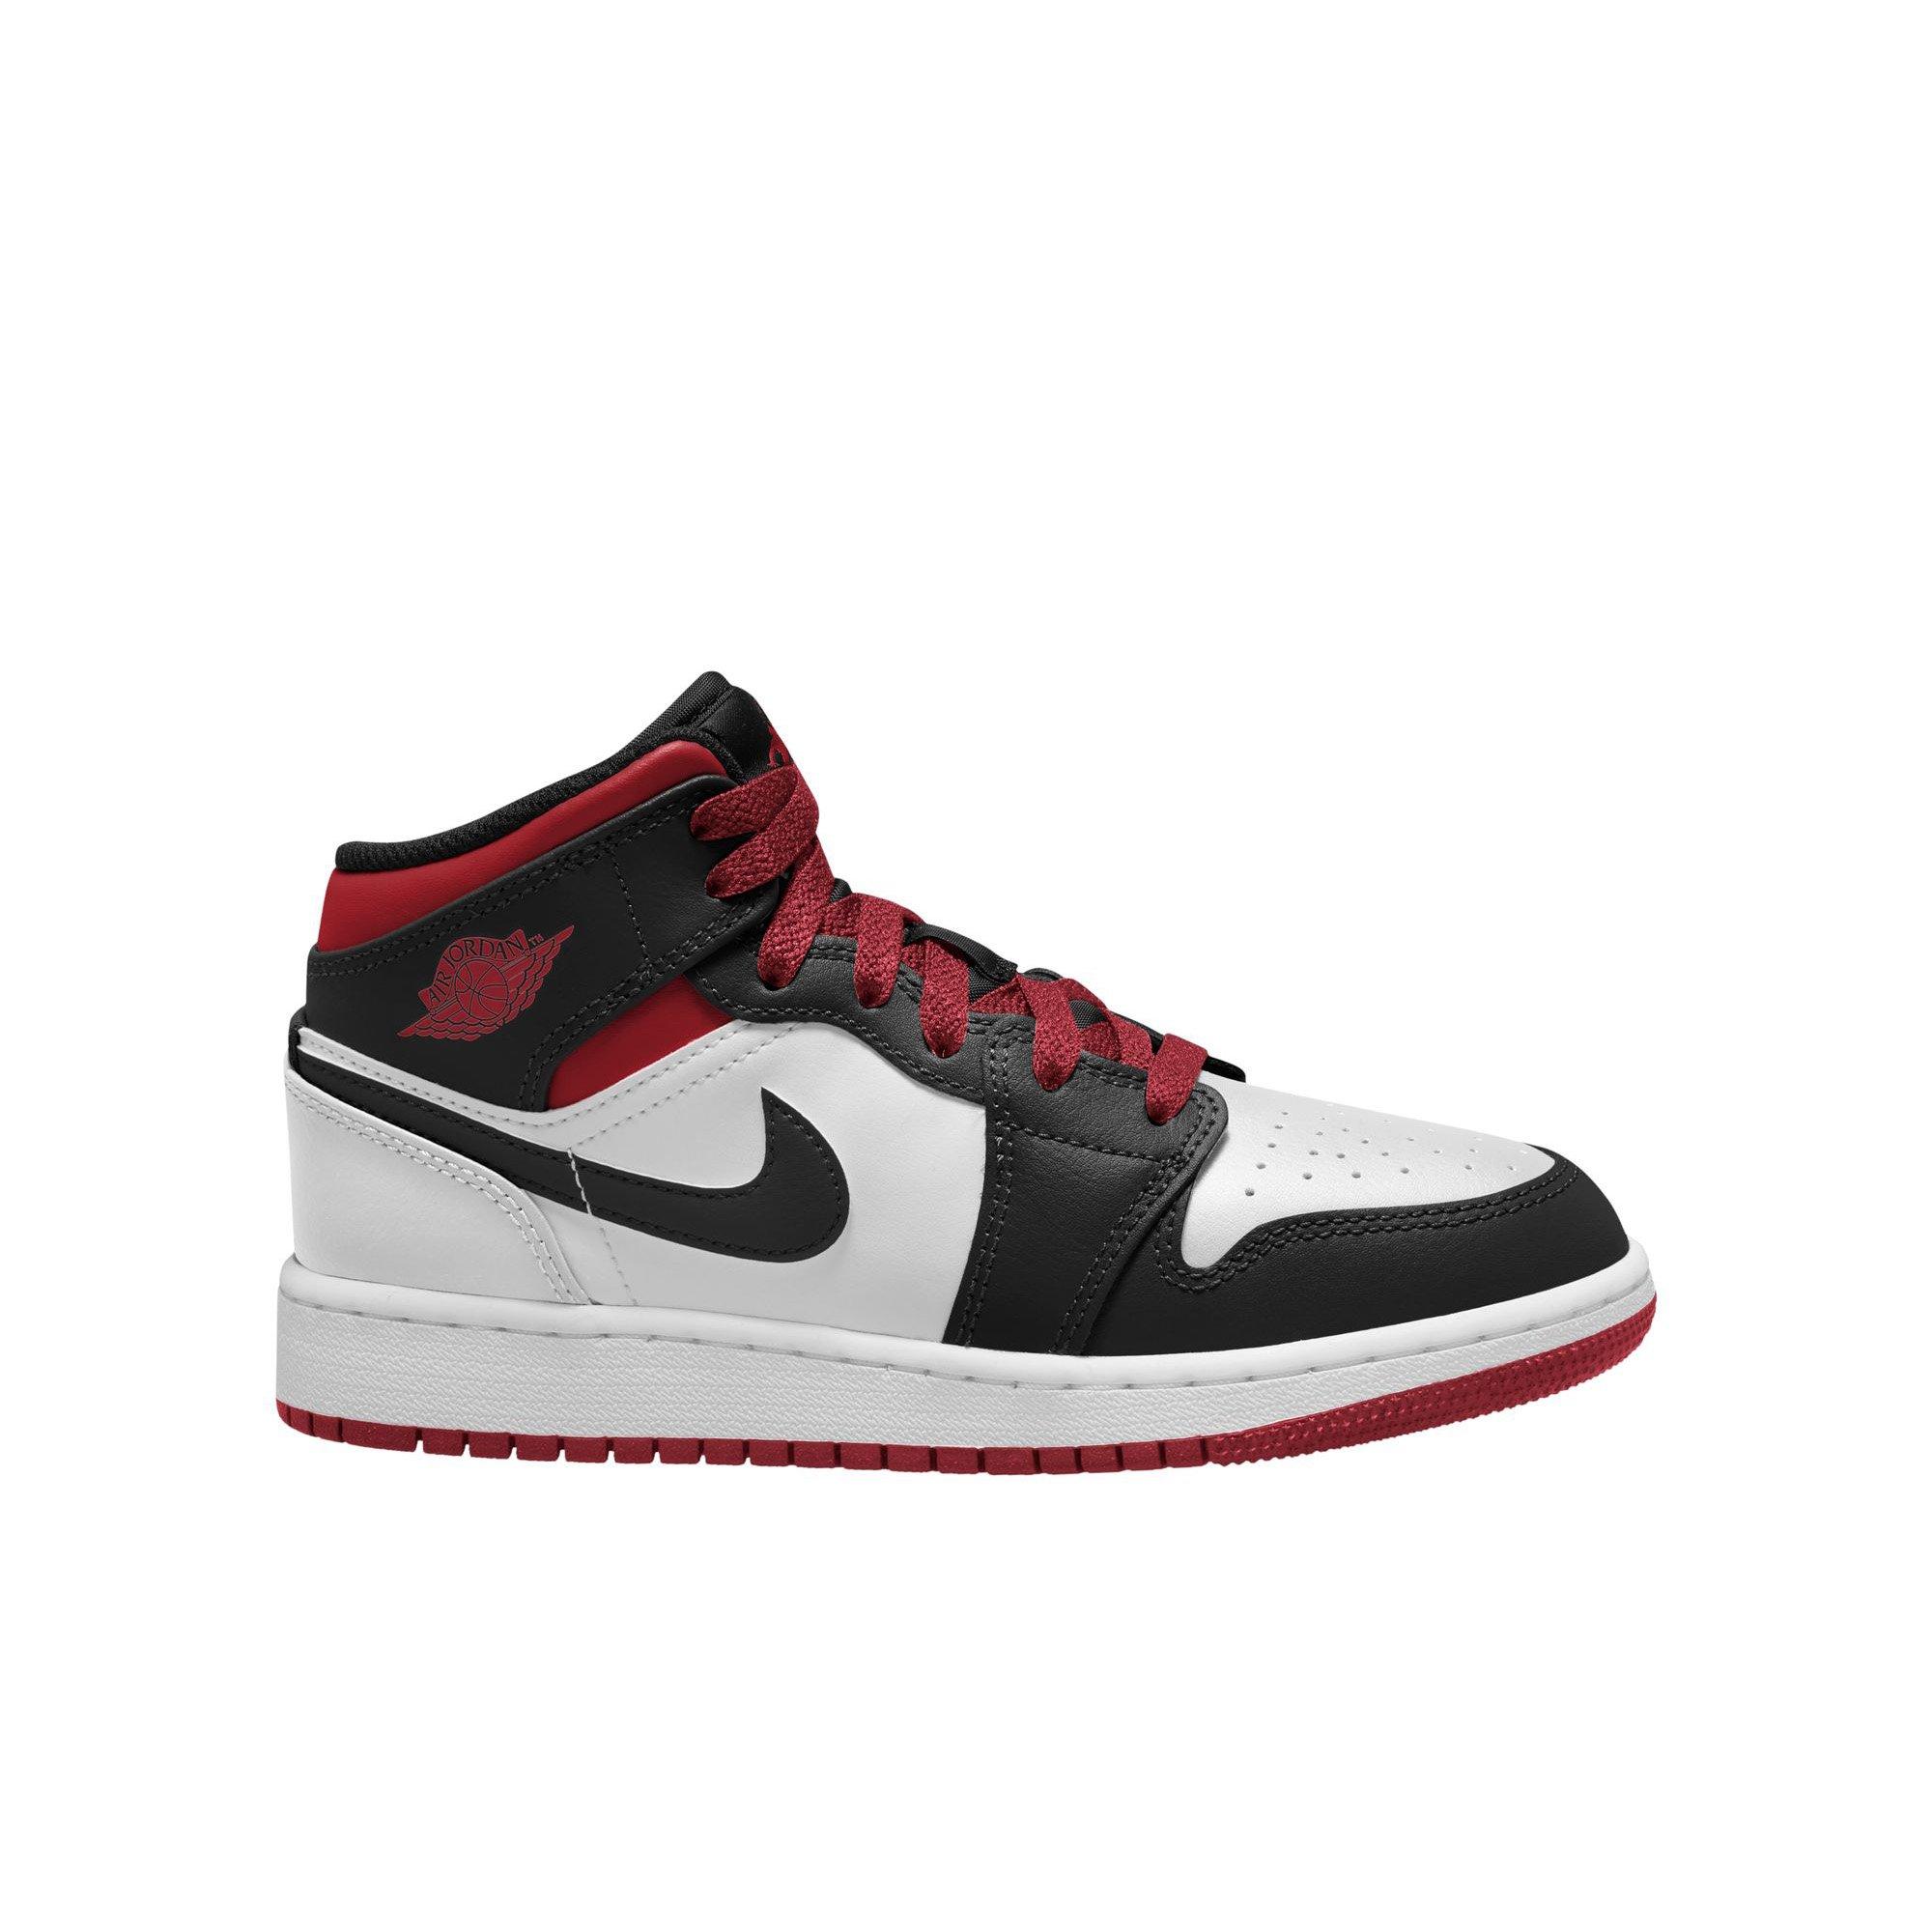 Air Jordan 1 Retro Shoes | Jordan 1 Low